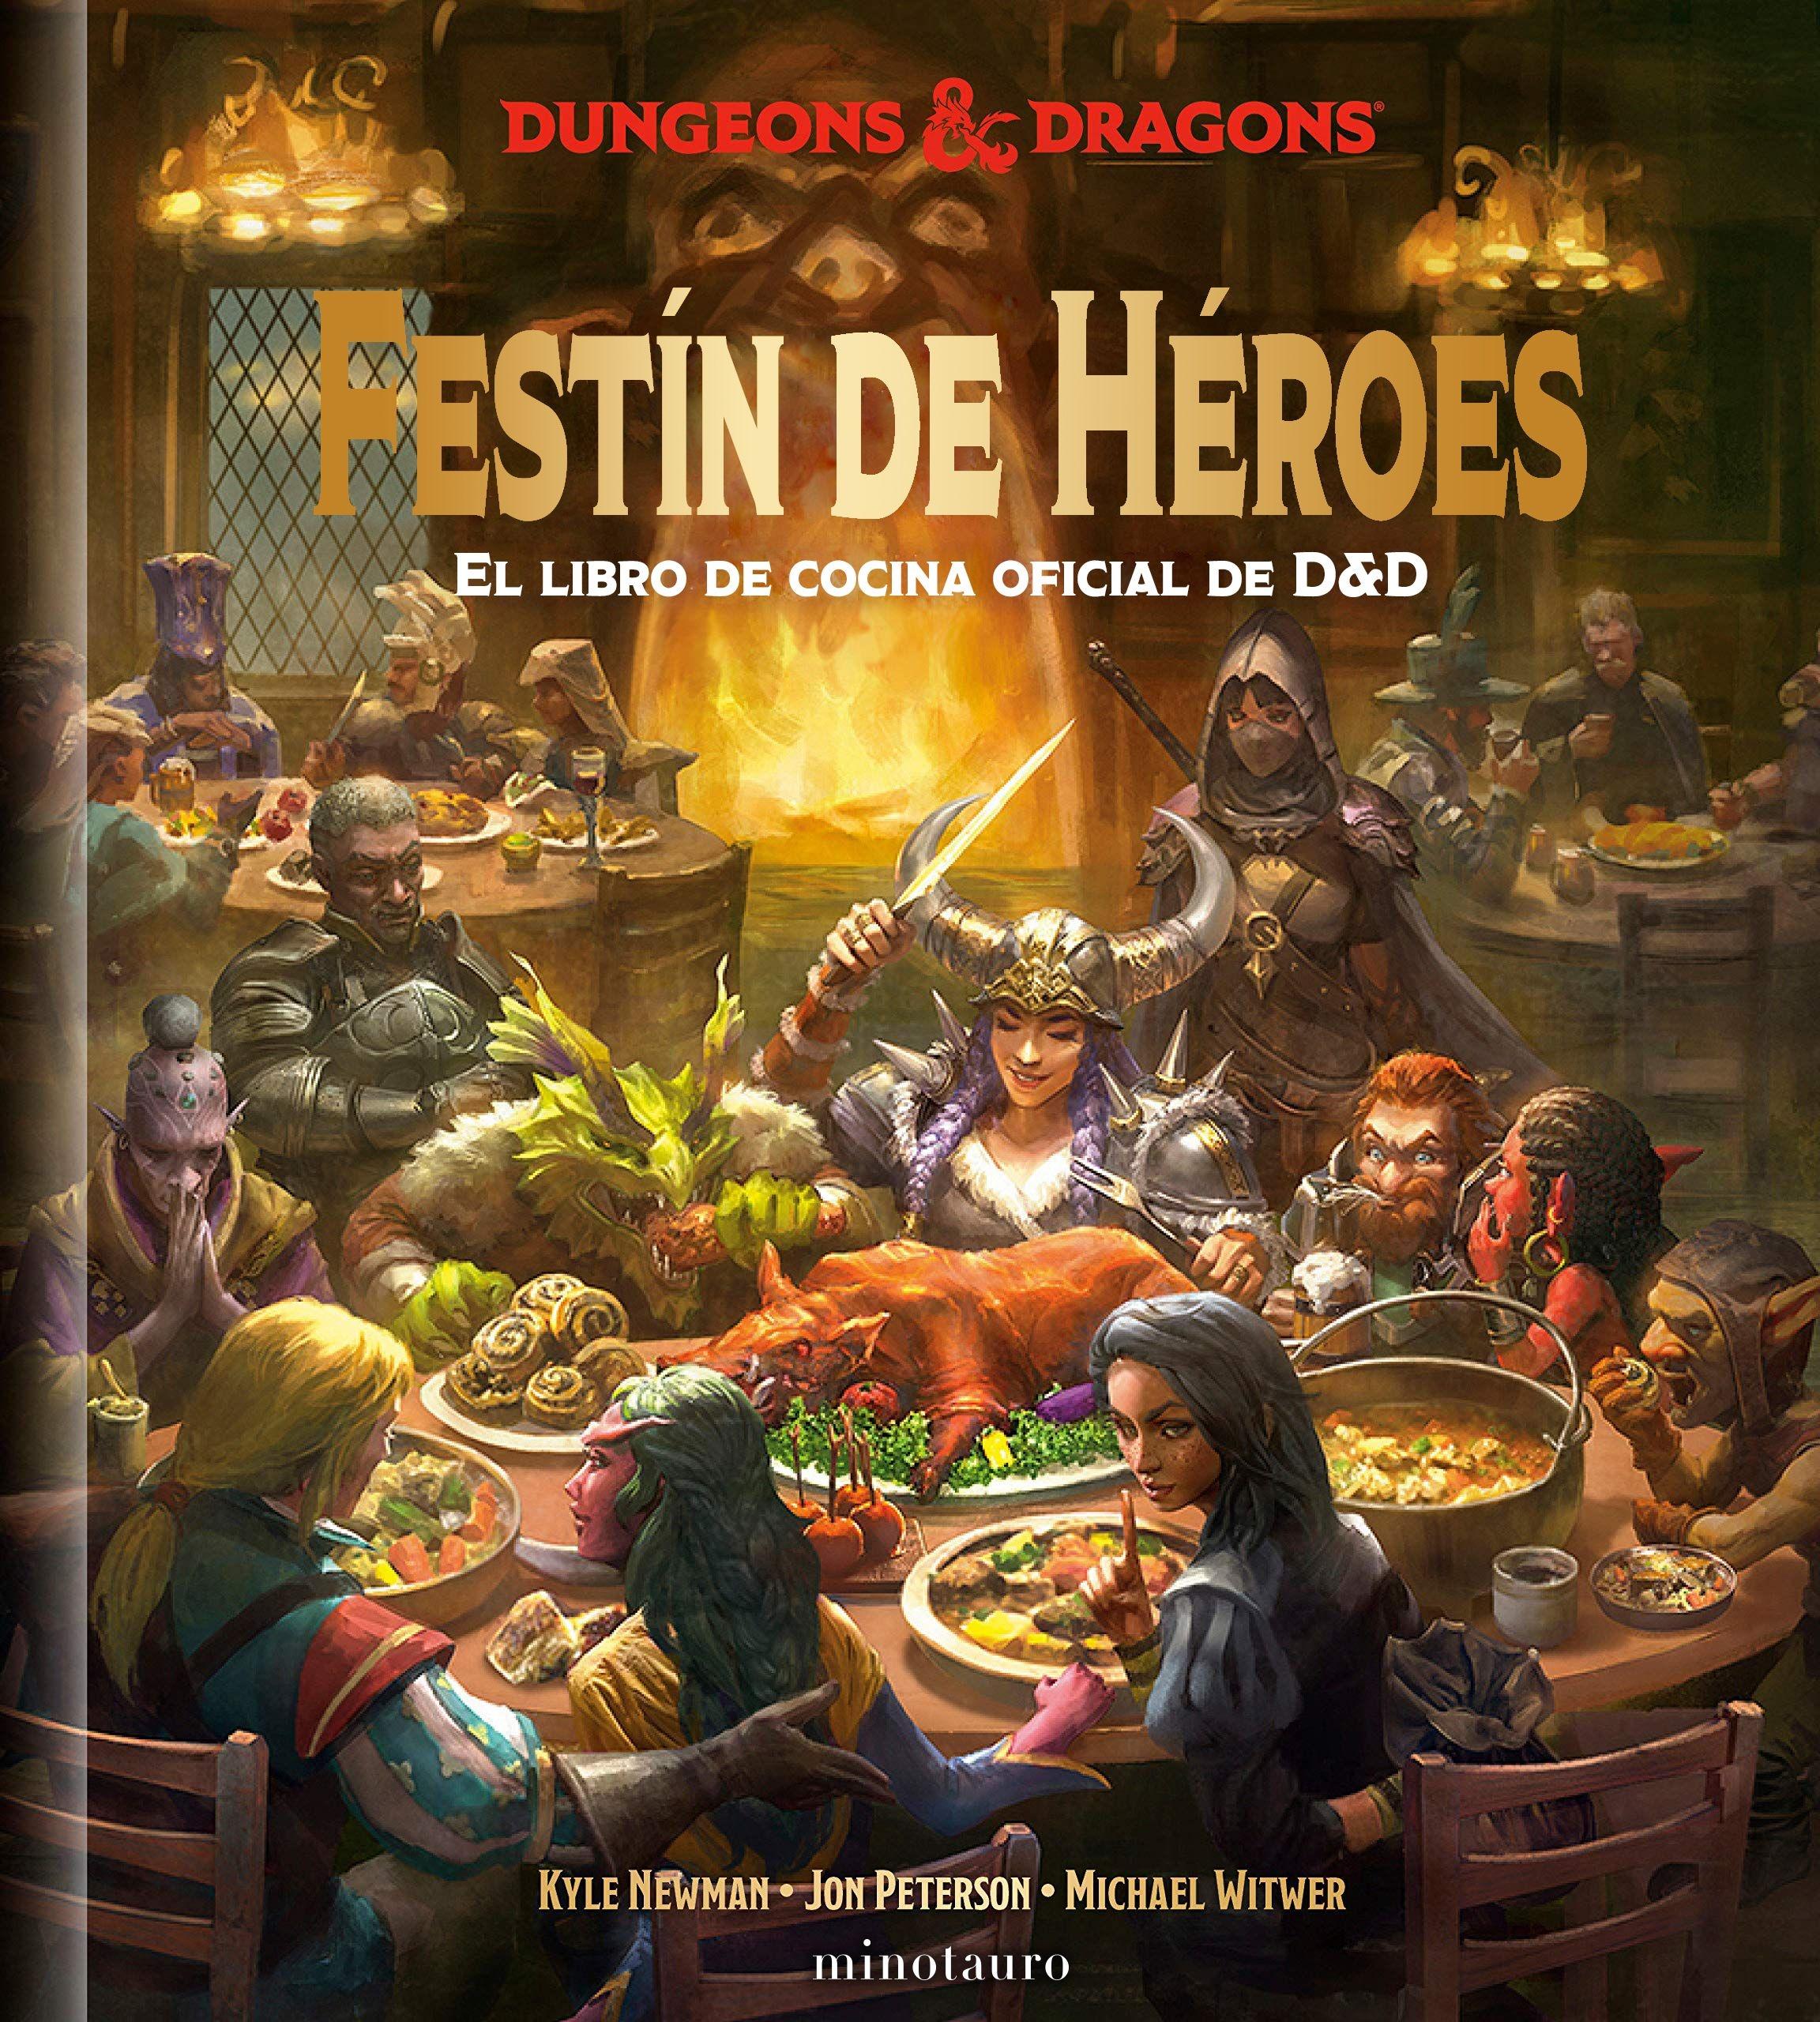 Festín de Héroes "El Libro de Cocina Oficial de D&D". 